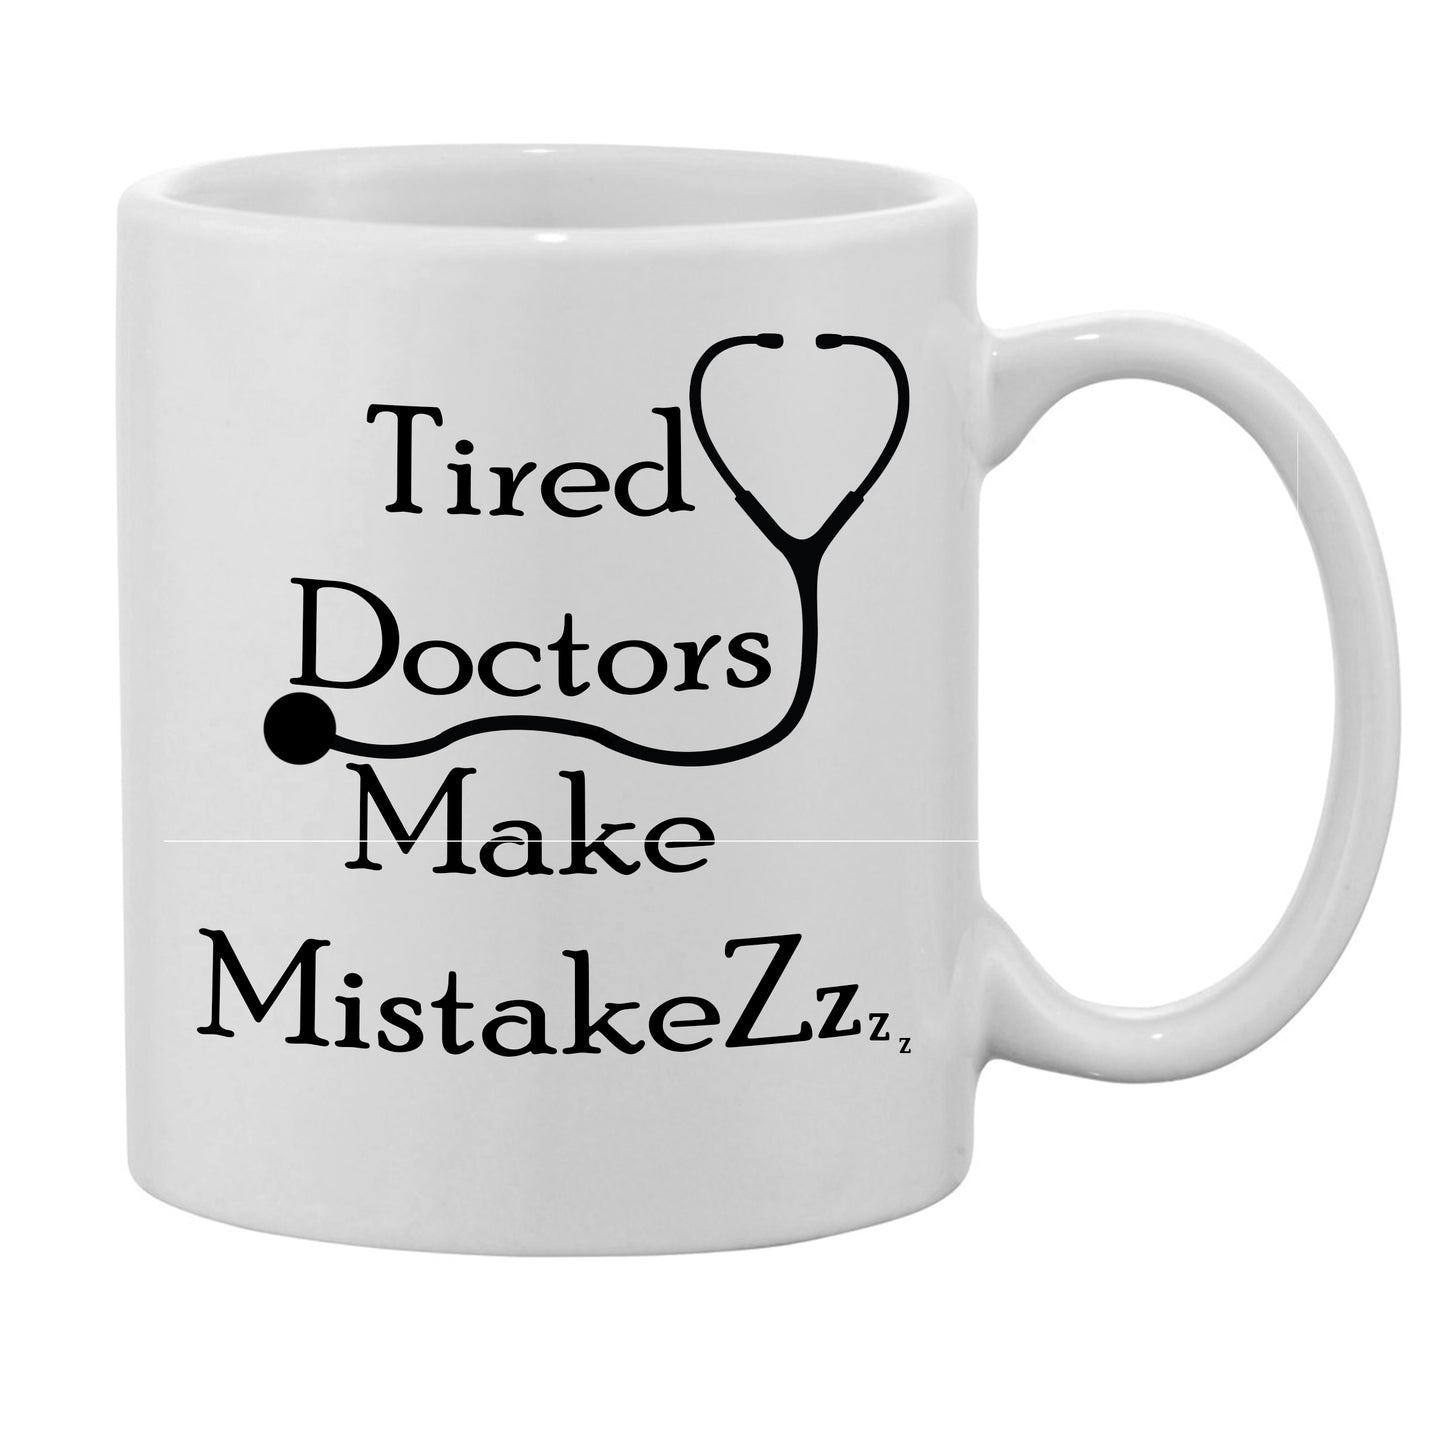 'Tired Doctors Make Mistakes' Mug